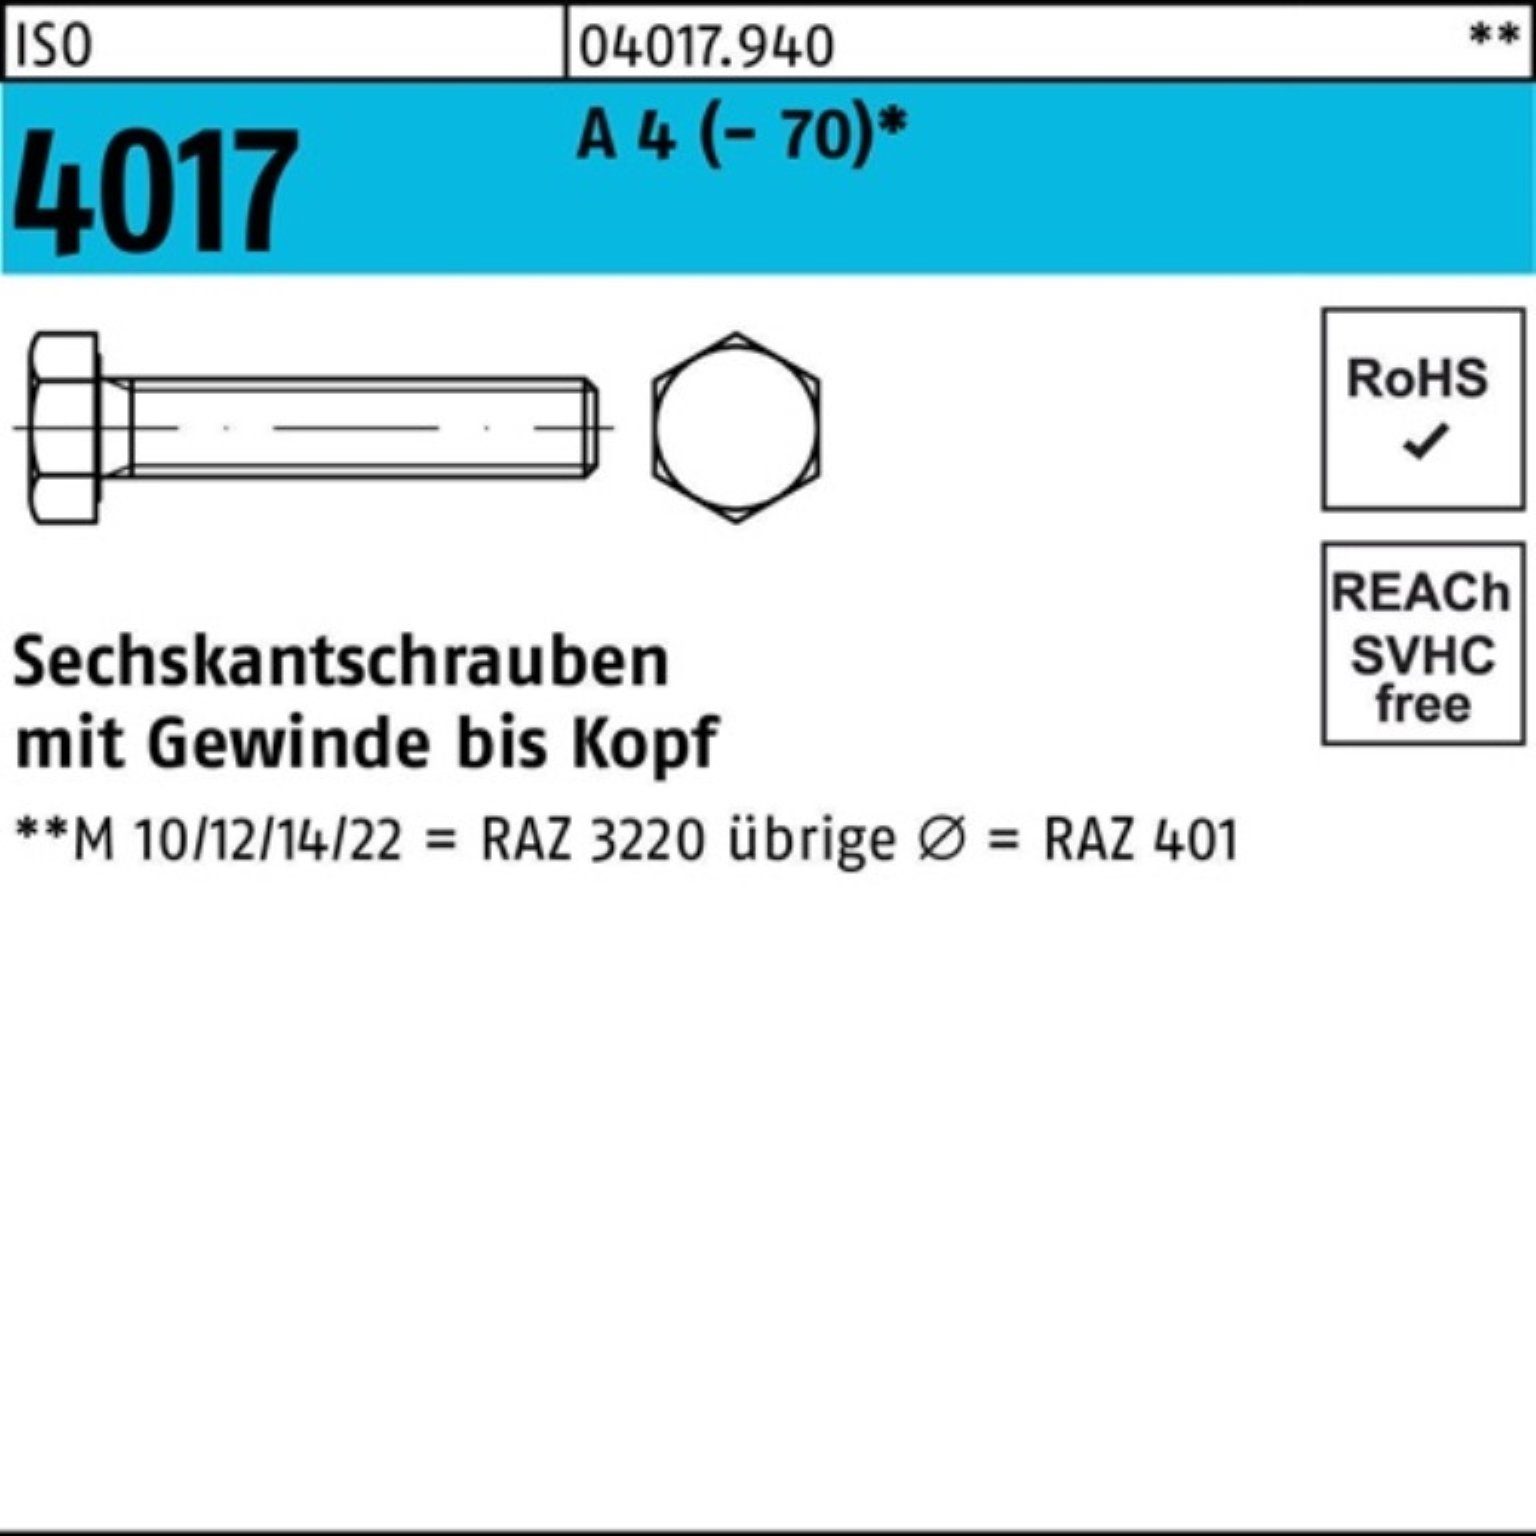 Bufab Sechskantschraube 100er Pack Sechskantschraube ISO 4017 VG M24x 45 A 4 (70) 1 Stück I